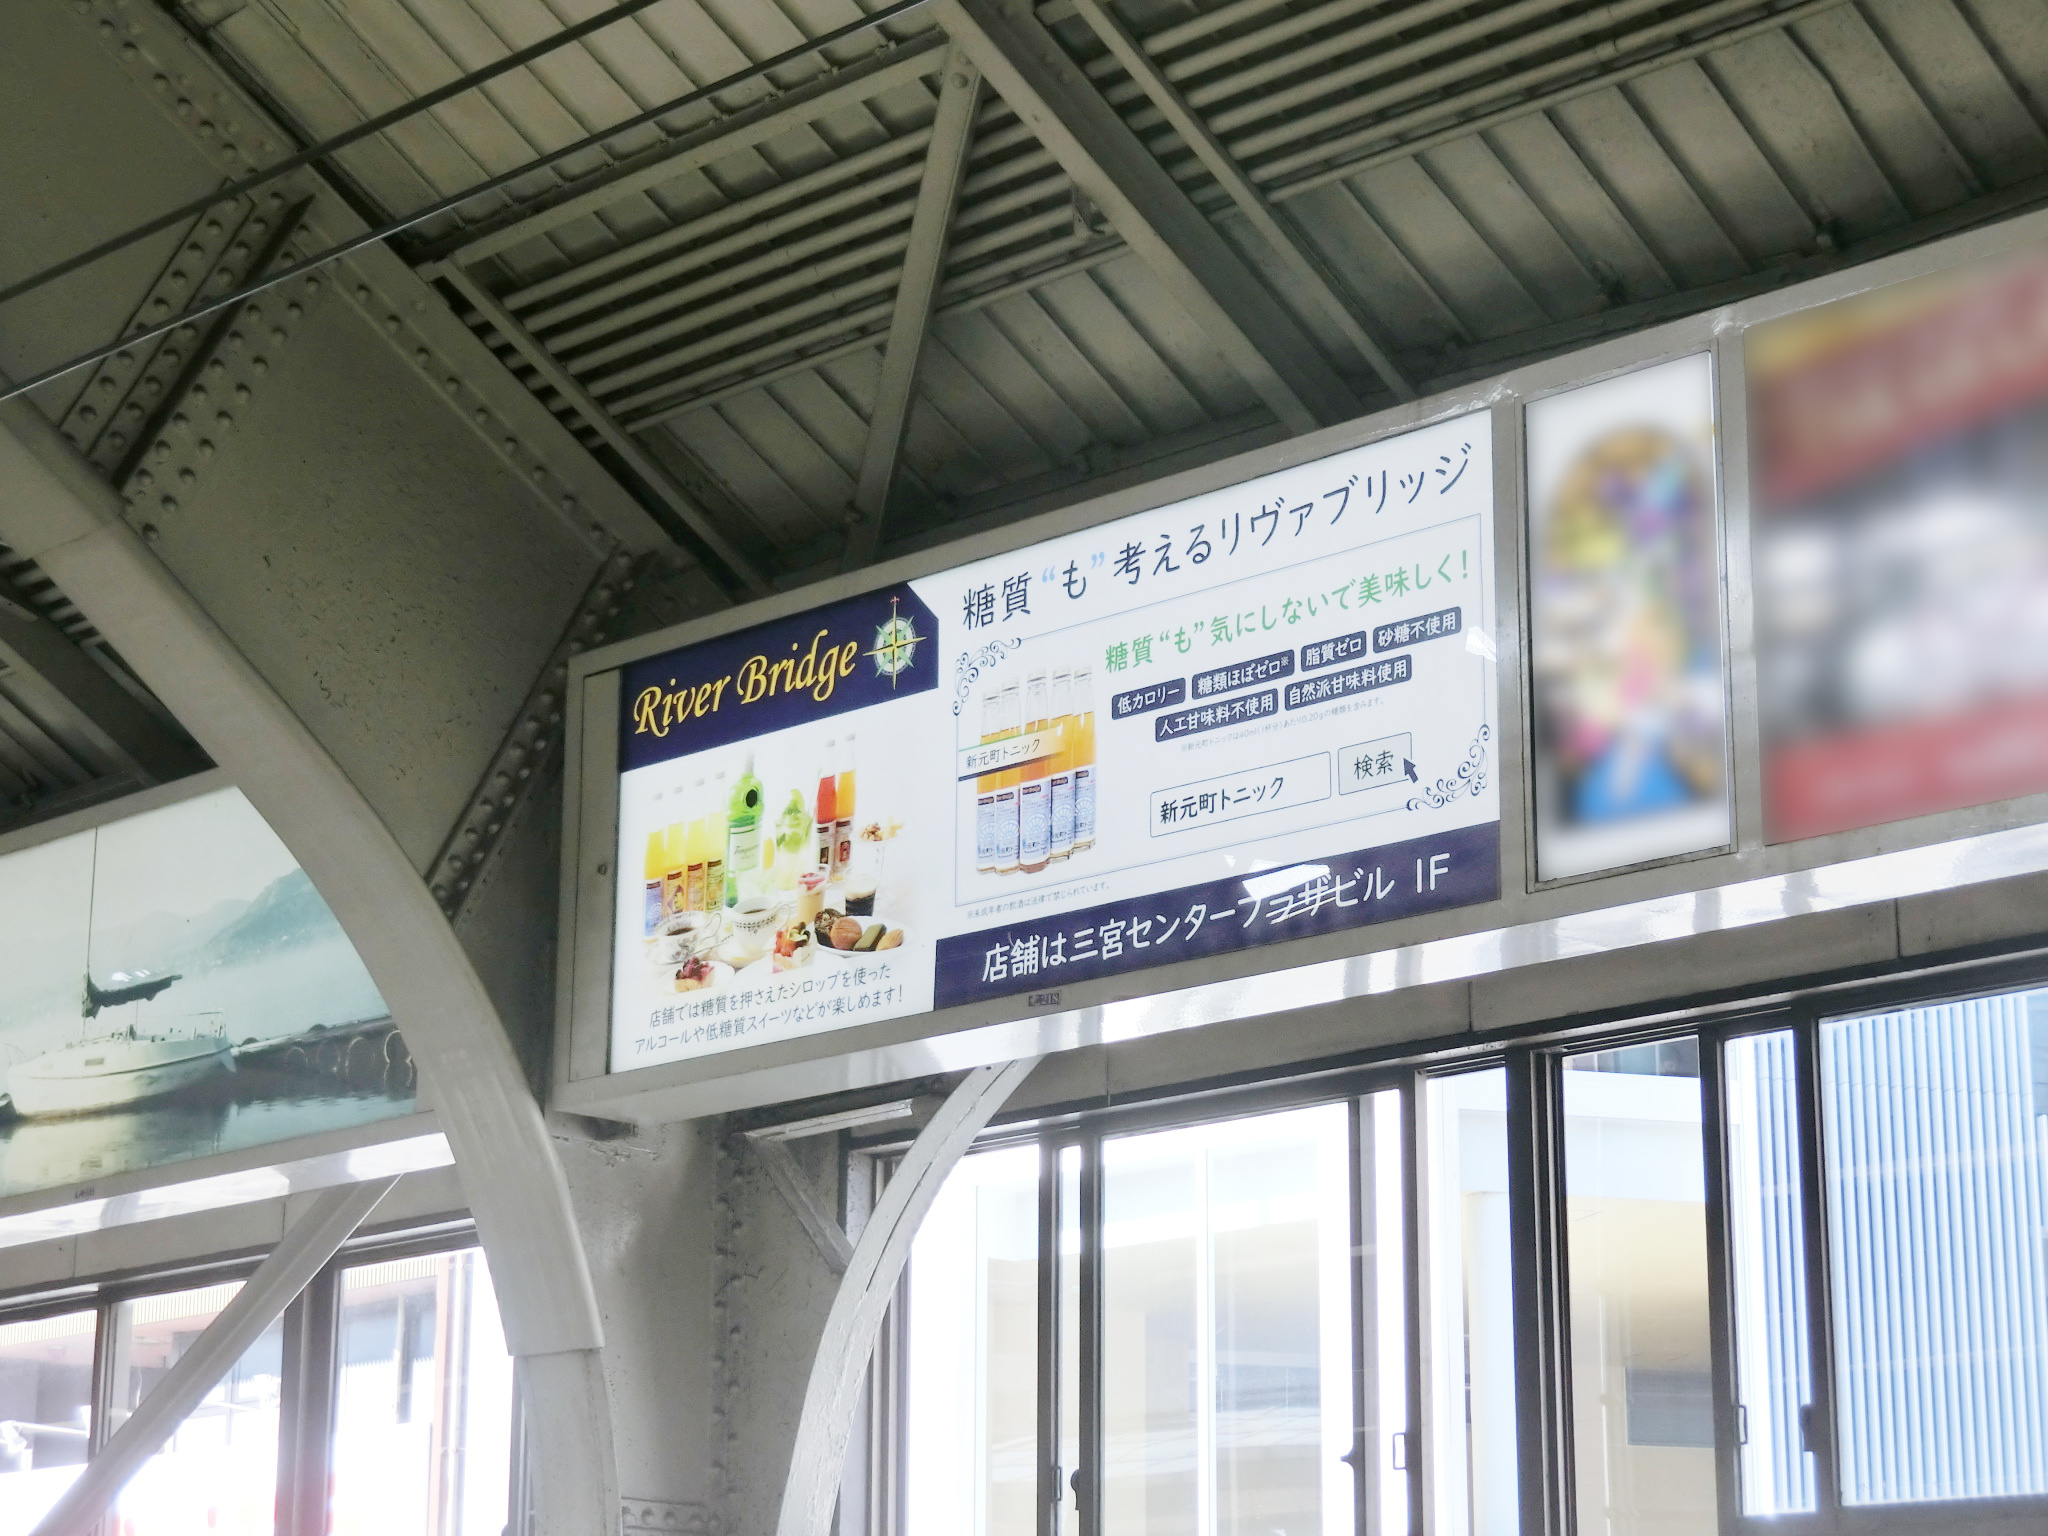 阪急電鉄 神戸三宮駅 駅看板